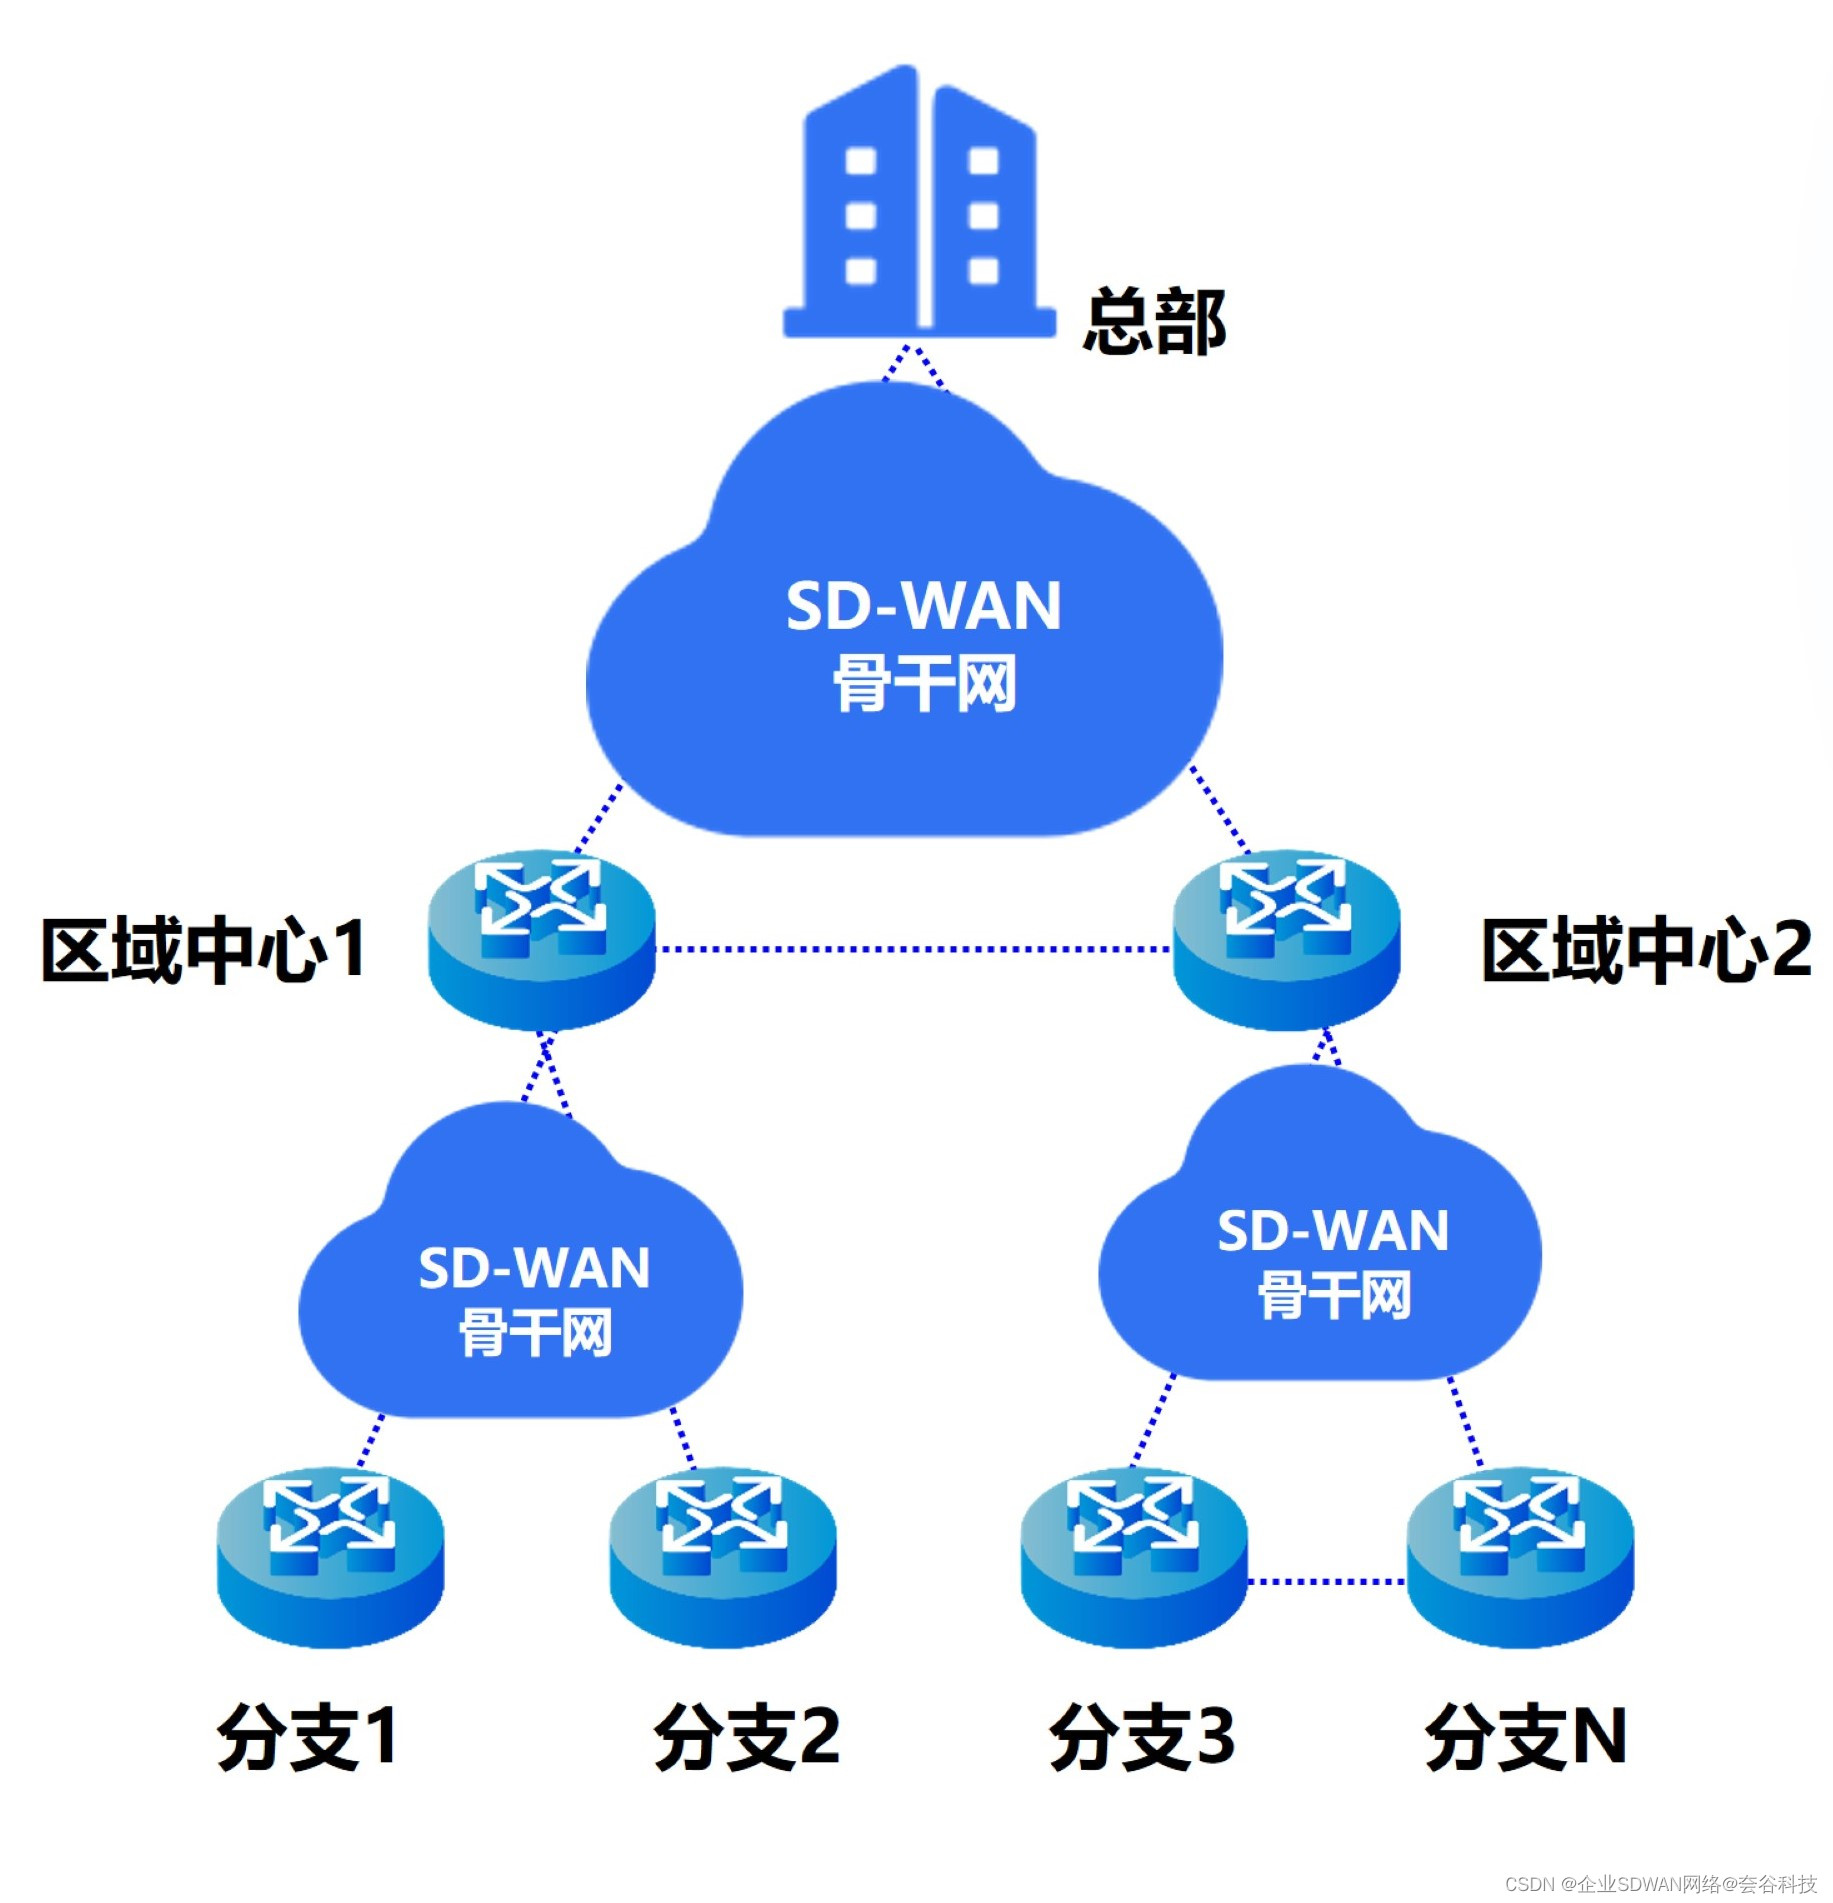 解析SD-WAN组网方式及应用场景，全面了解典型案例